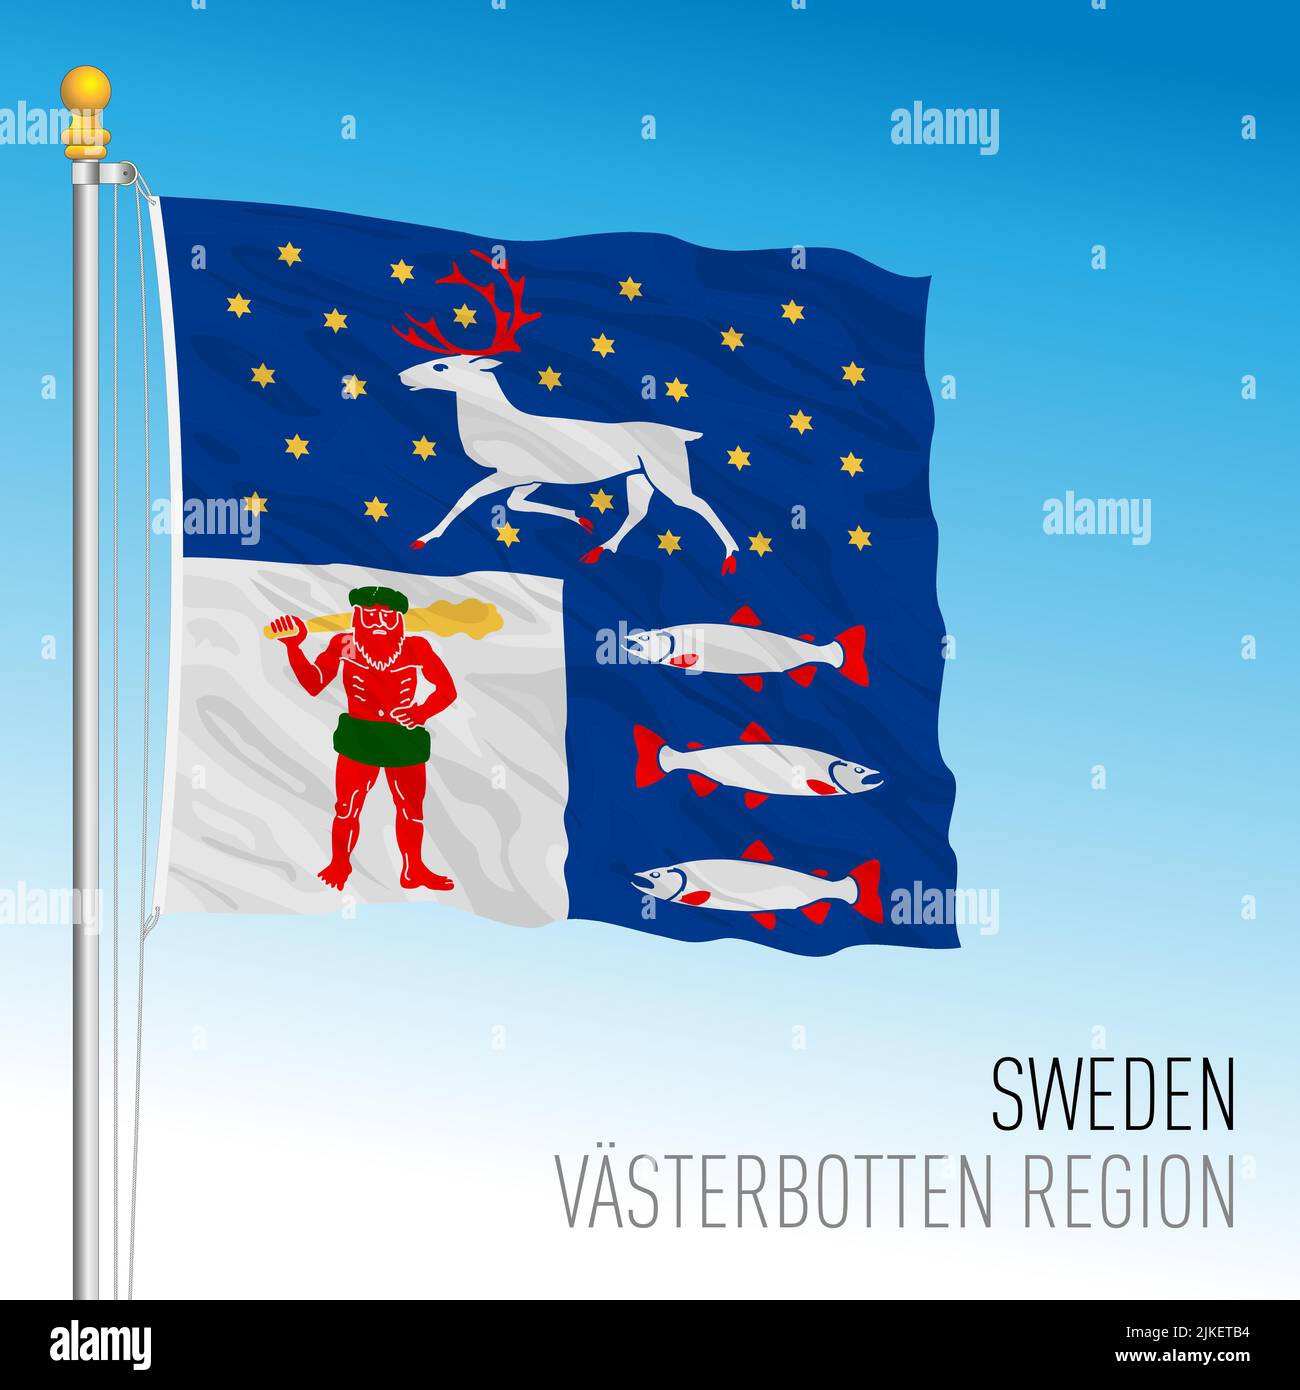 Bandera regional del condado de Vasterbotten, Reino de Suecia, ilustración de vectores Ilustración del Vector